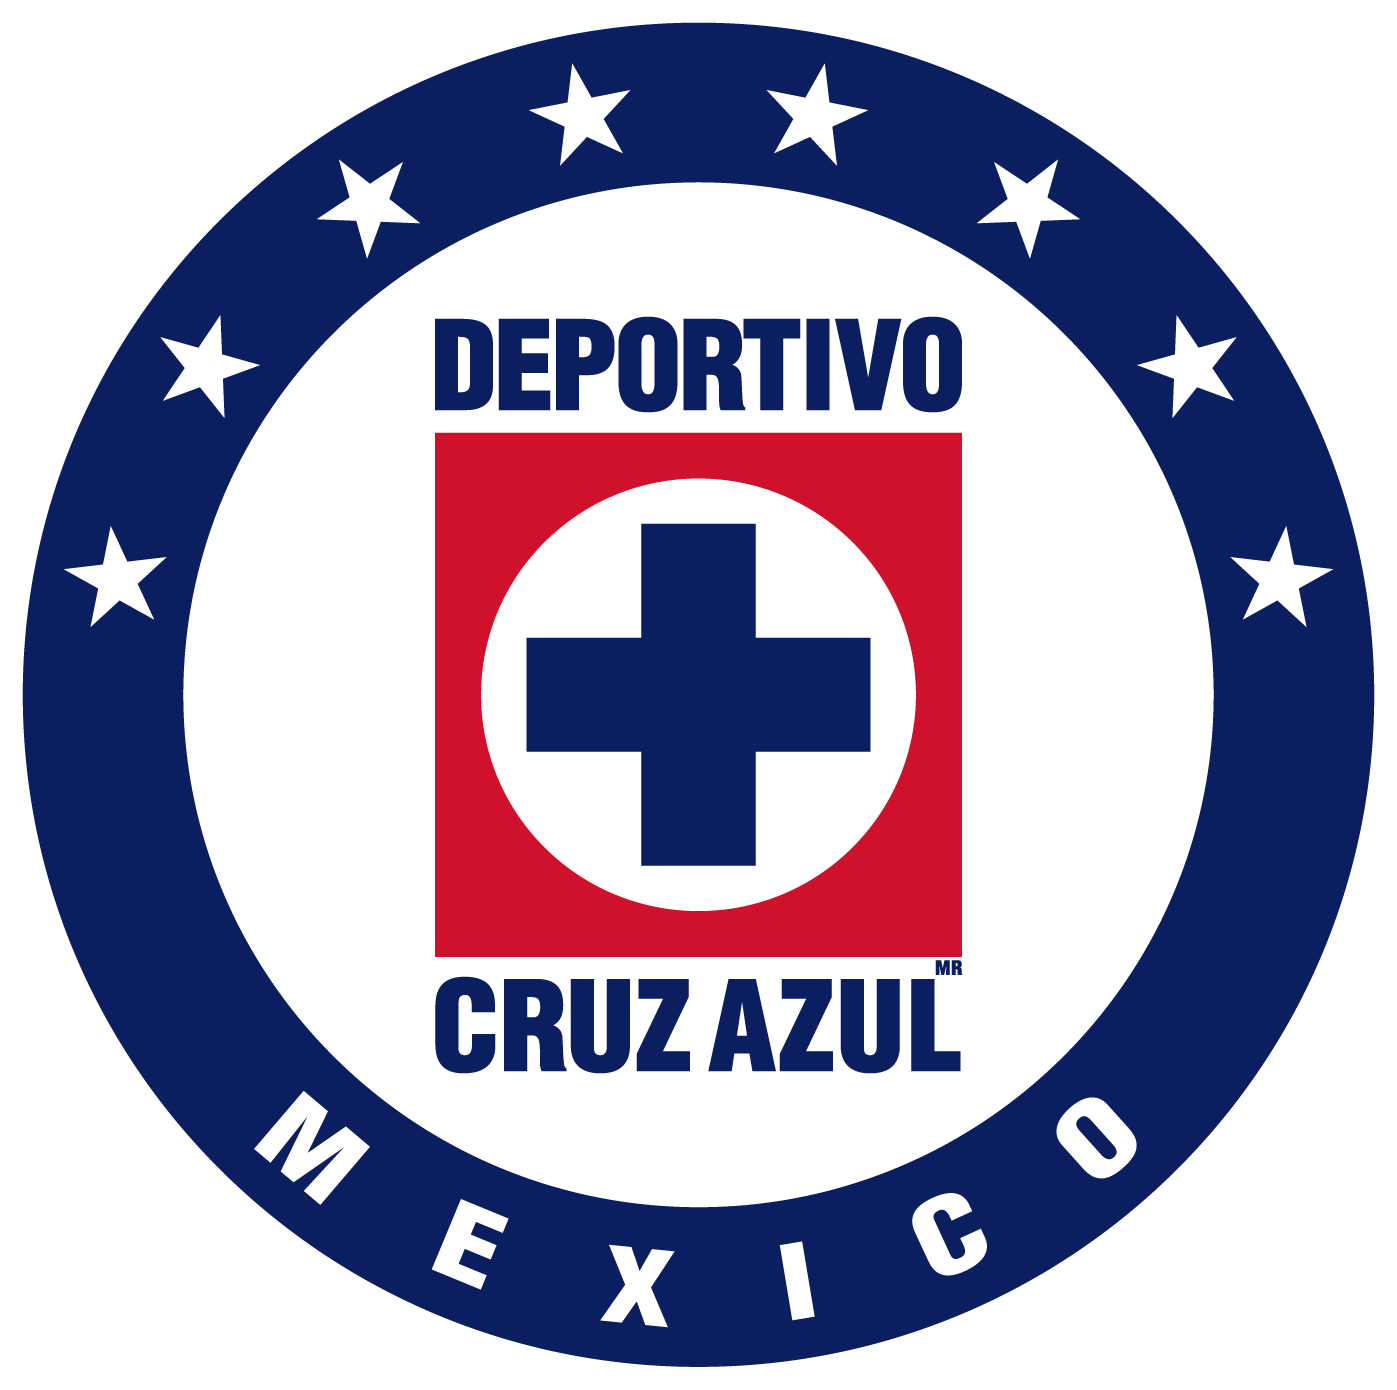 Cruz Azul vs Toluca Pronóstico: Toluca defenderá su liderato general